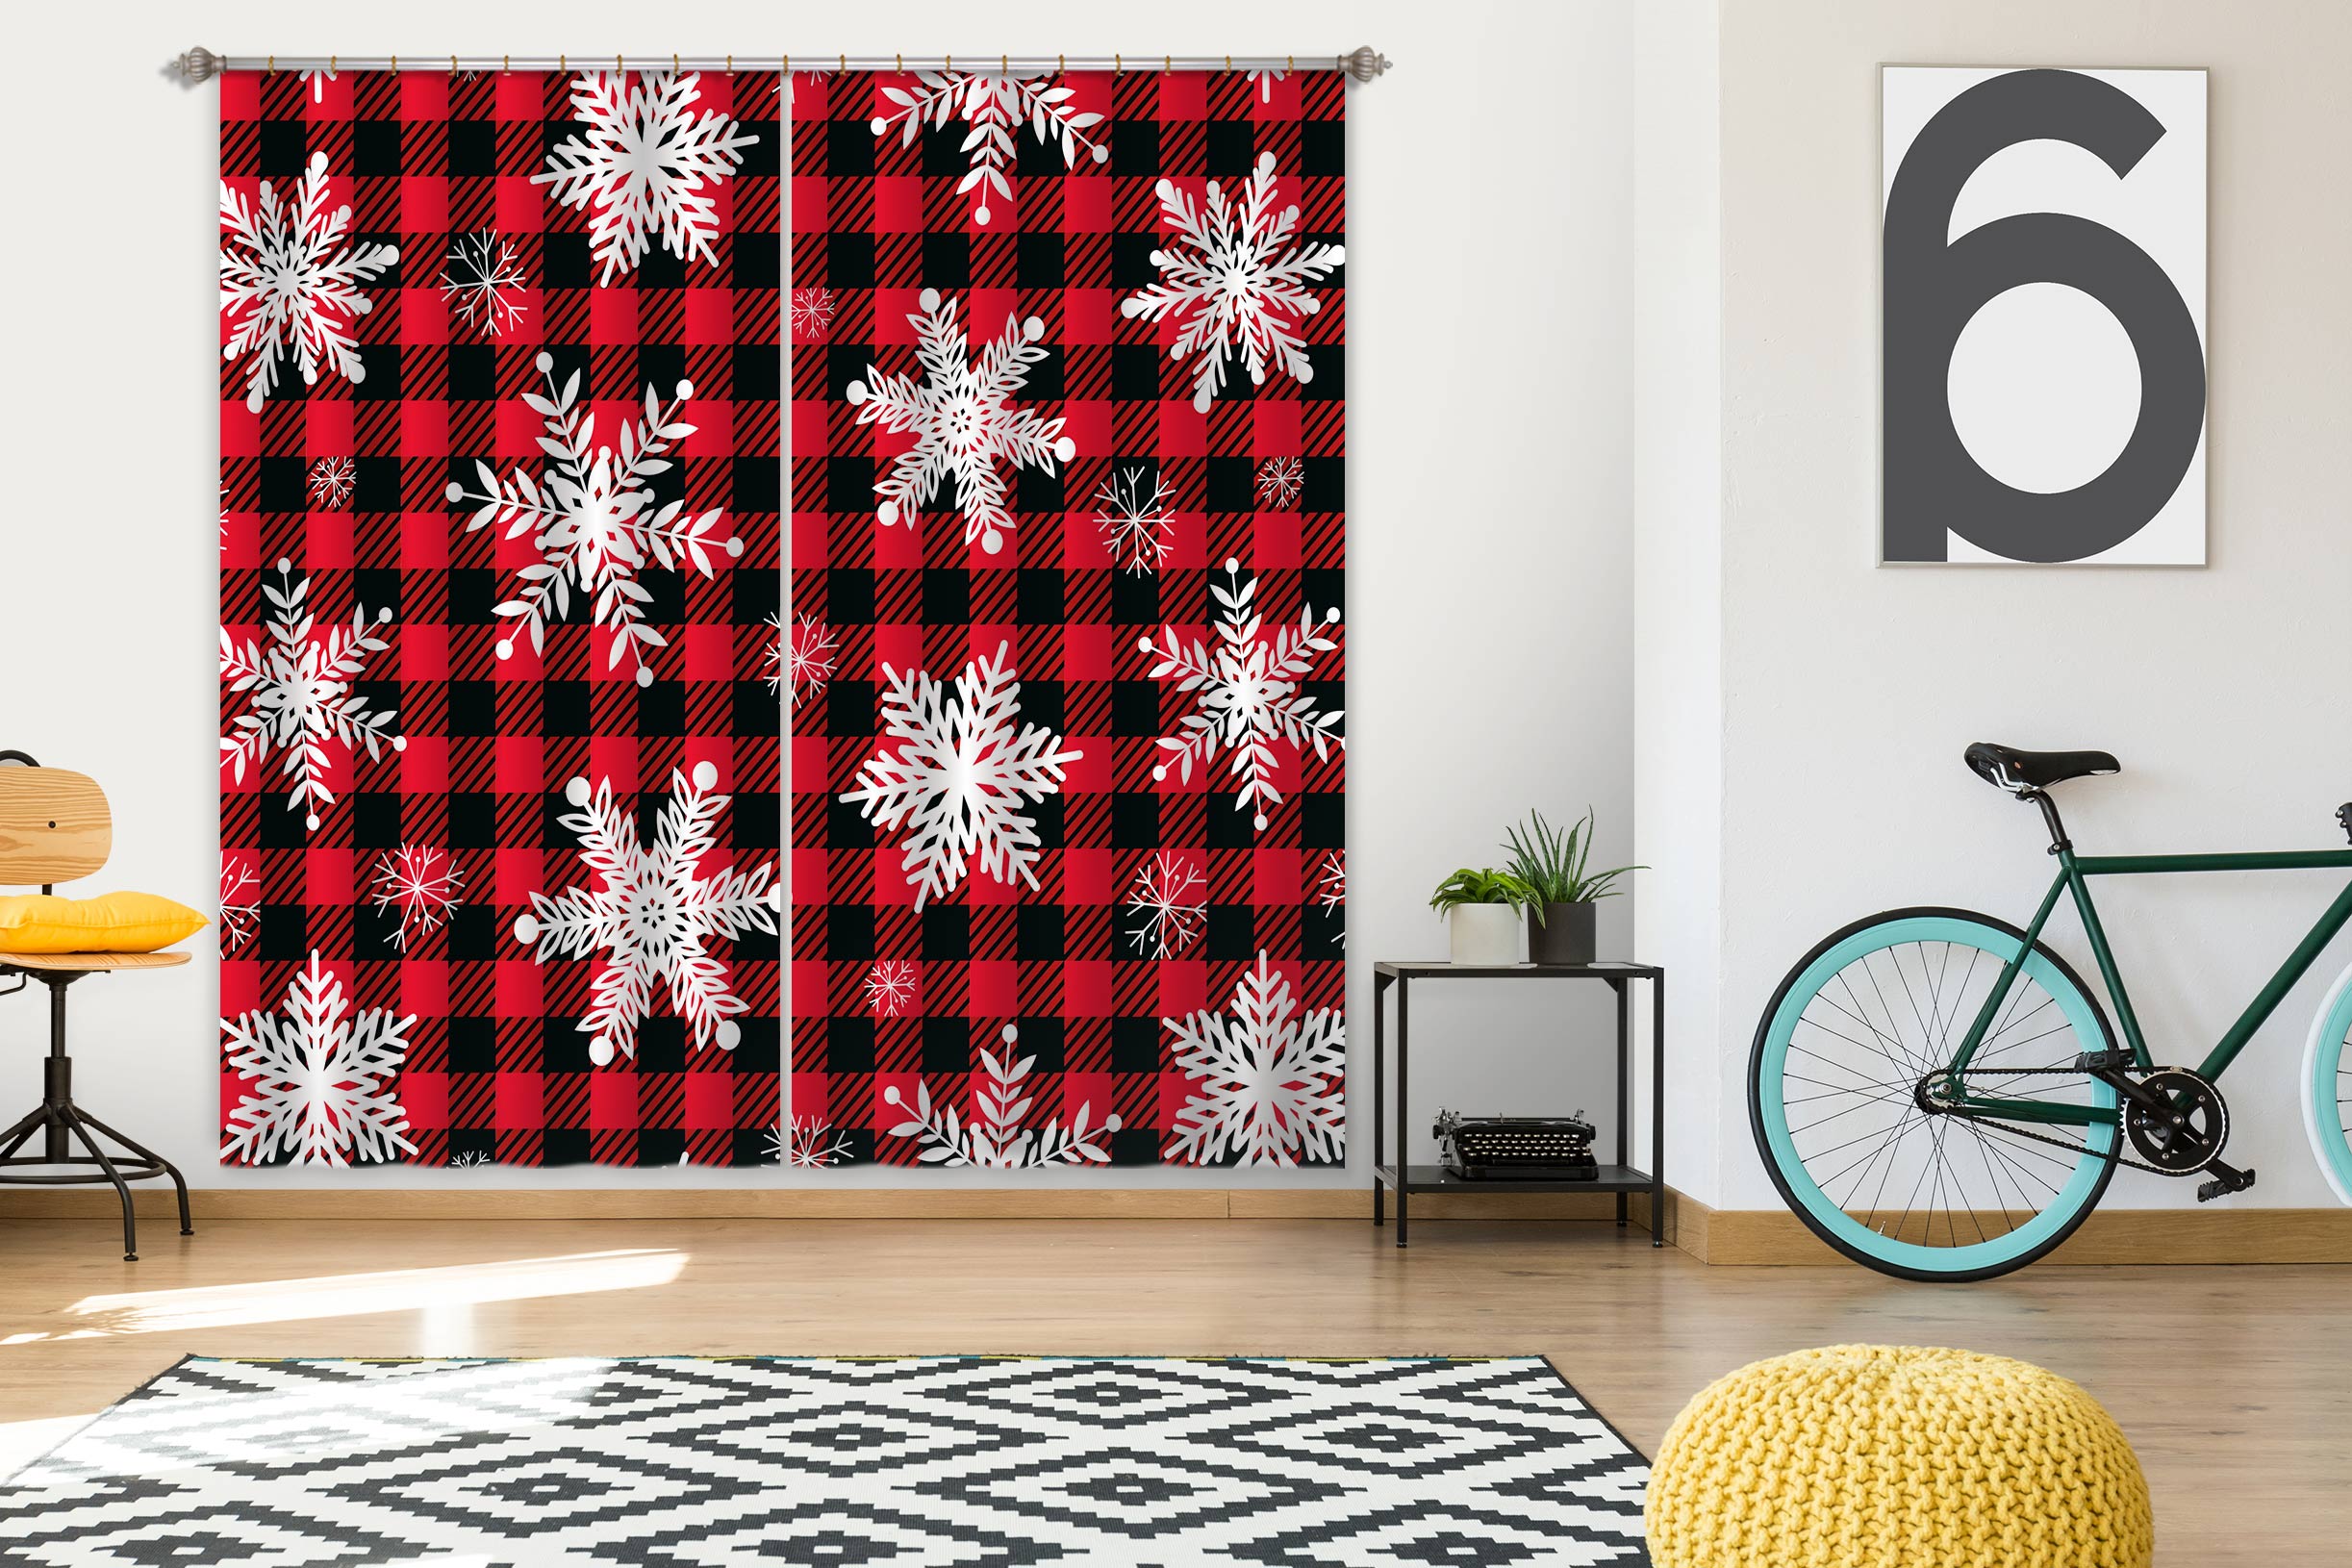 3D Snowflake Black Red Plaid 53136 Christmas Curtains Drapes Xmas